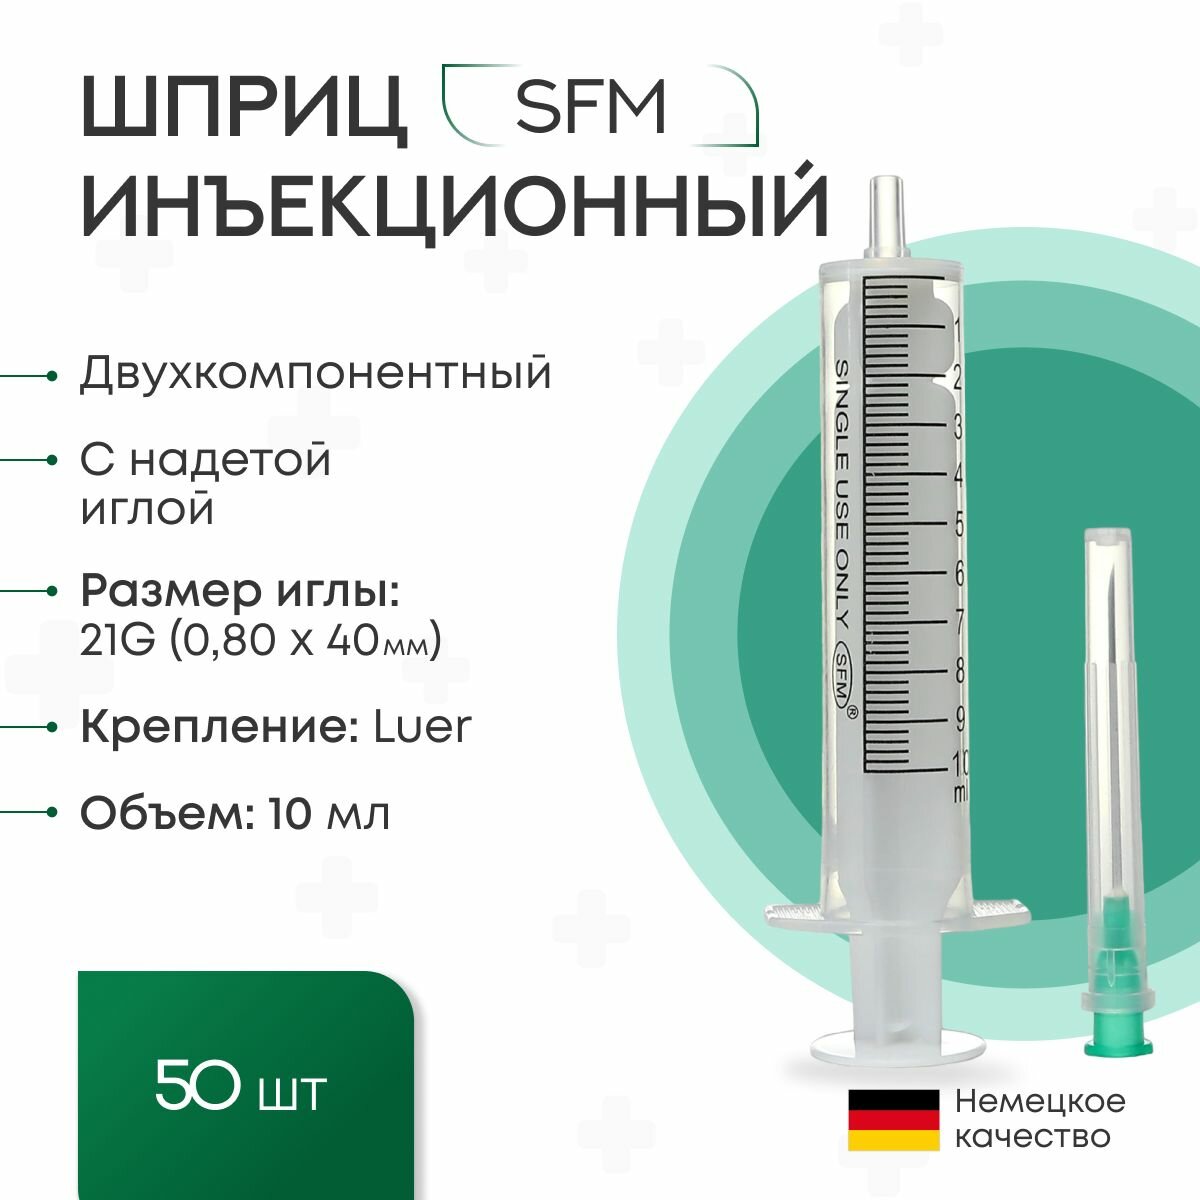 Шприц 10 мл. Двухкомпонентный SFM, Германия одноразовый стерилизованный с иглой 0,80 х 40 - 21G x 1 1/2" (блистер) 50 шт.